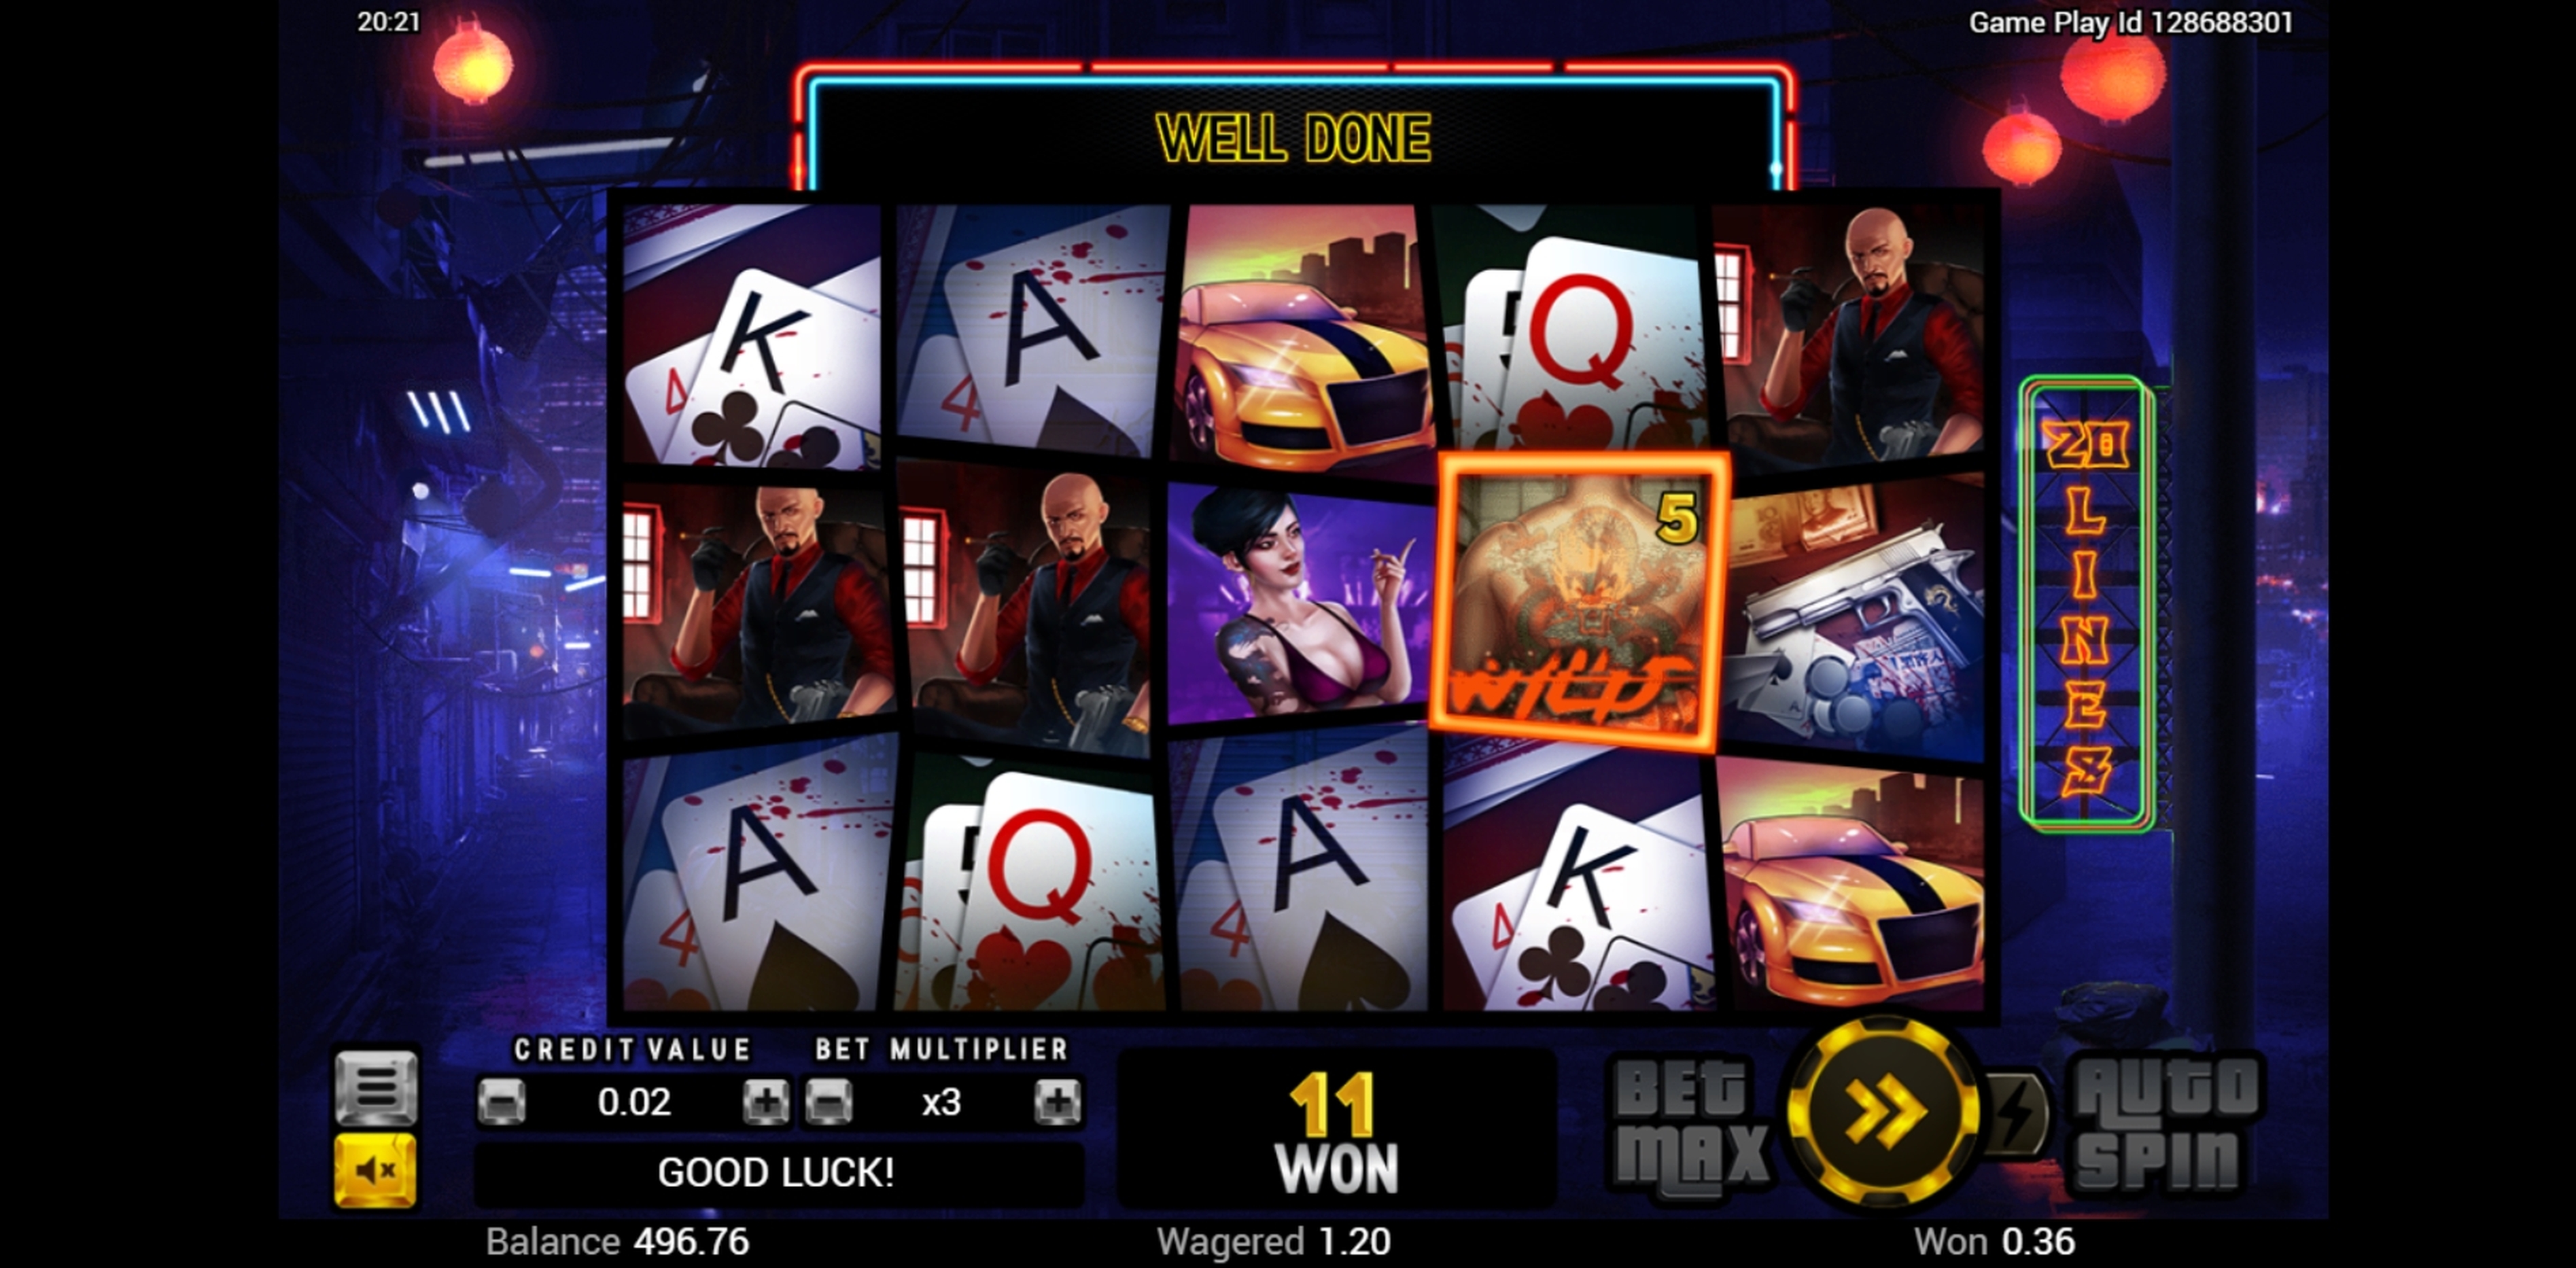 Win Money in Wild Triads Free Slot Game by Swintt